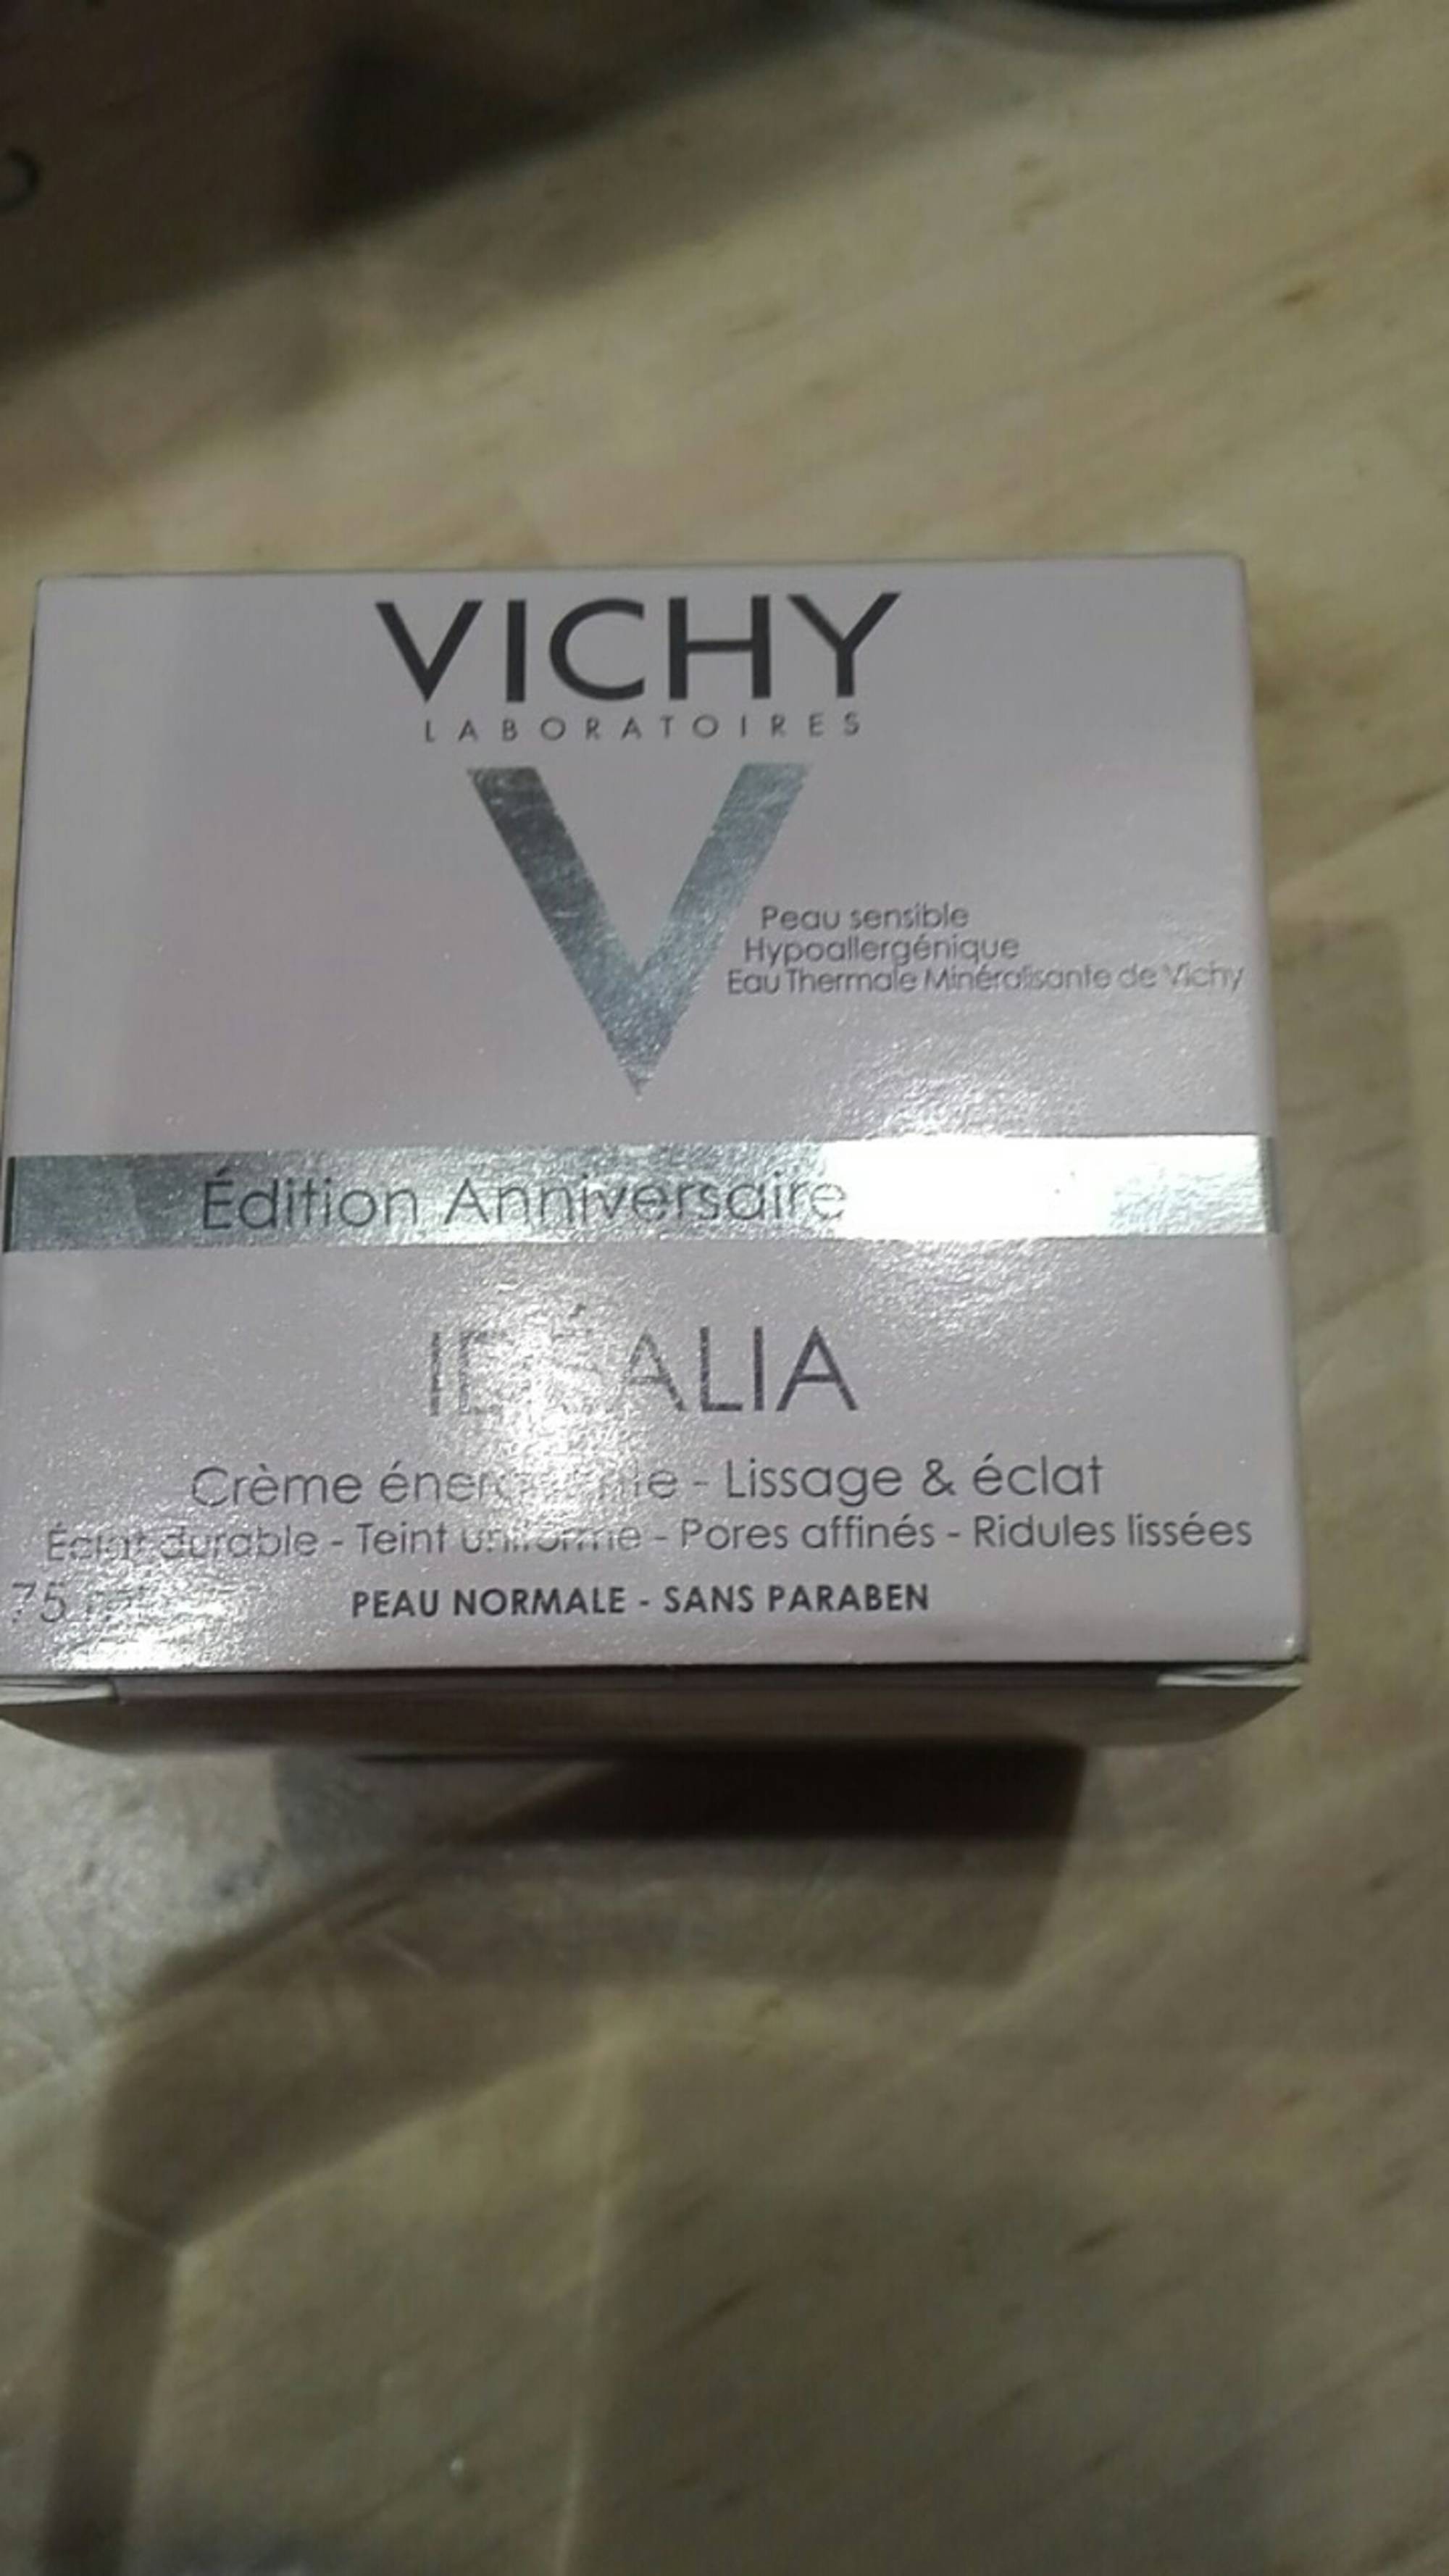 VICHY - Idéalia - Crème énergisante lissage & éclat